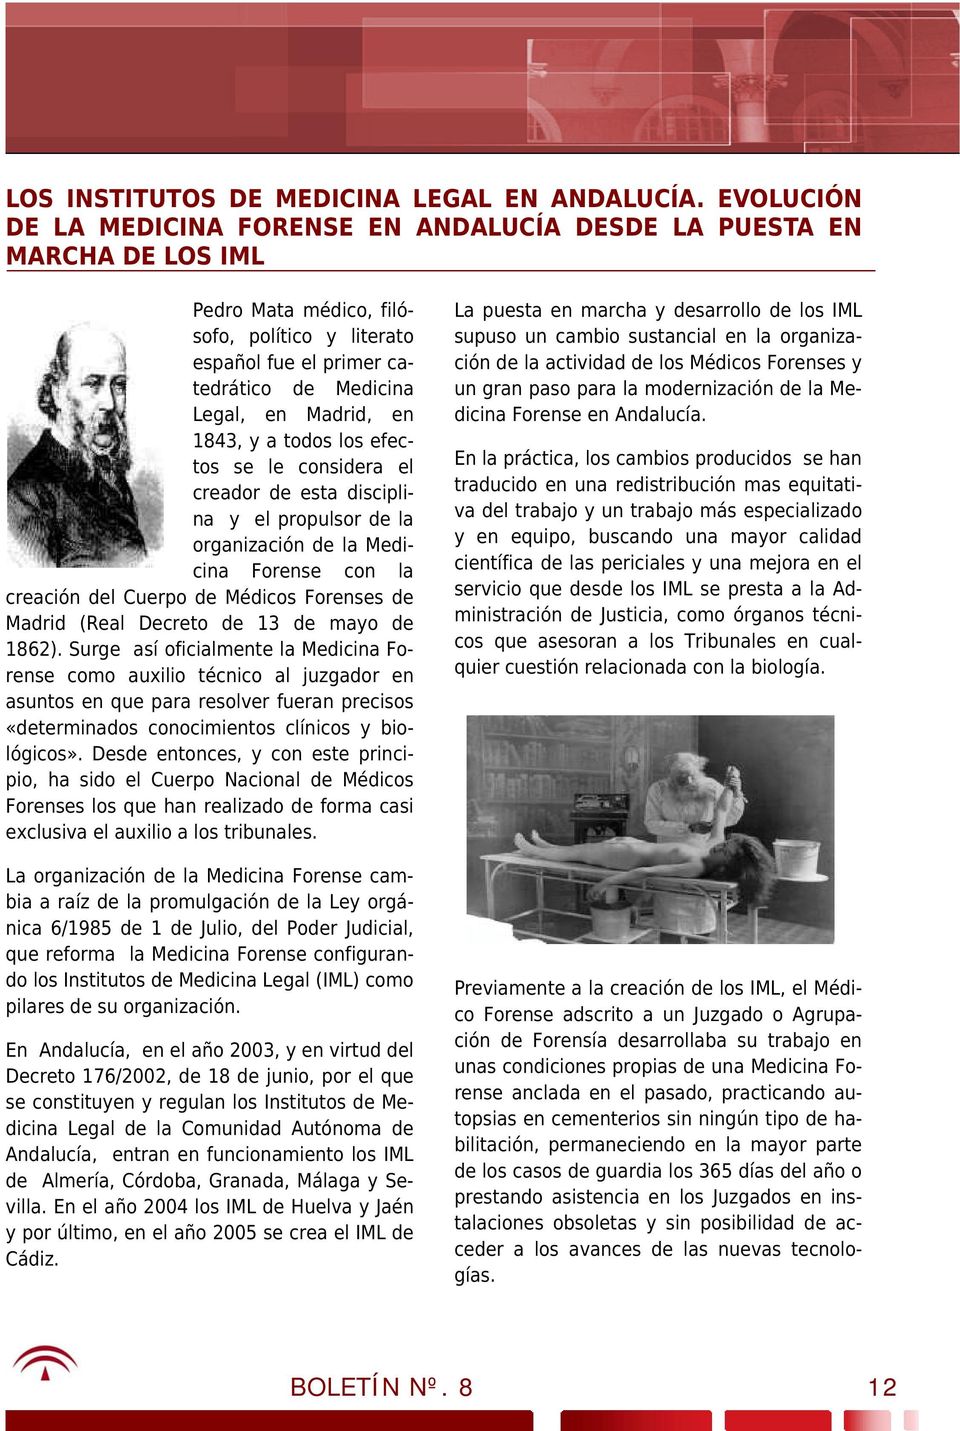 1843, y a todos los efectos se le considera el creador de esta disciplina y el propulsor de la organización de la Medicina Forense con la creación del Cuerpo de Médicos Forenses de Madrid (Real